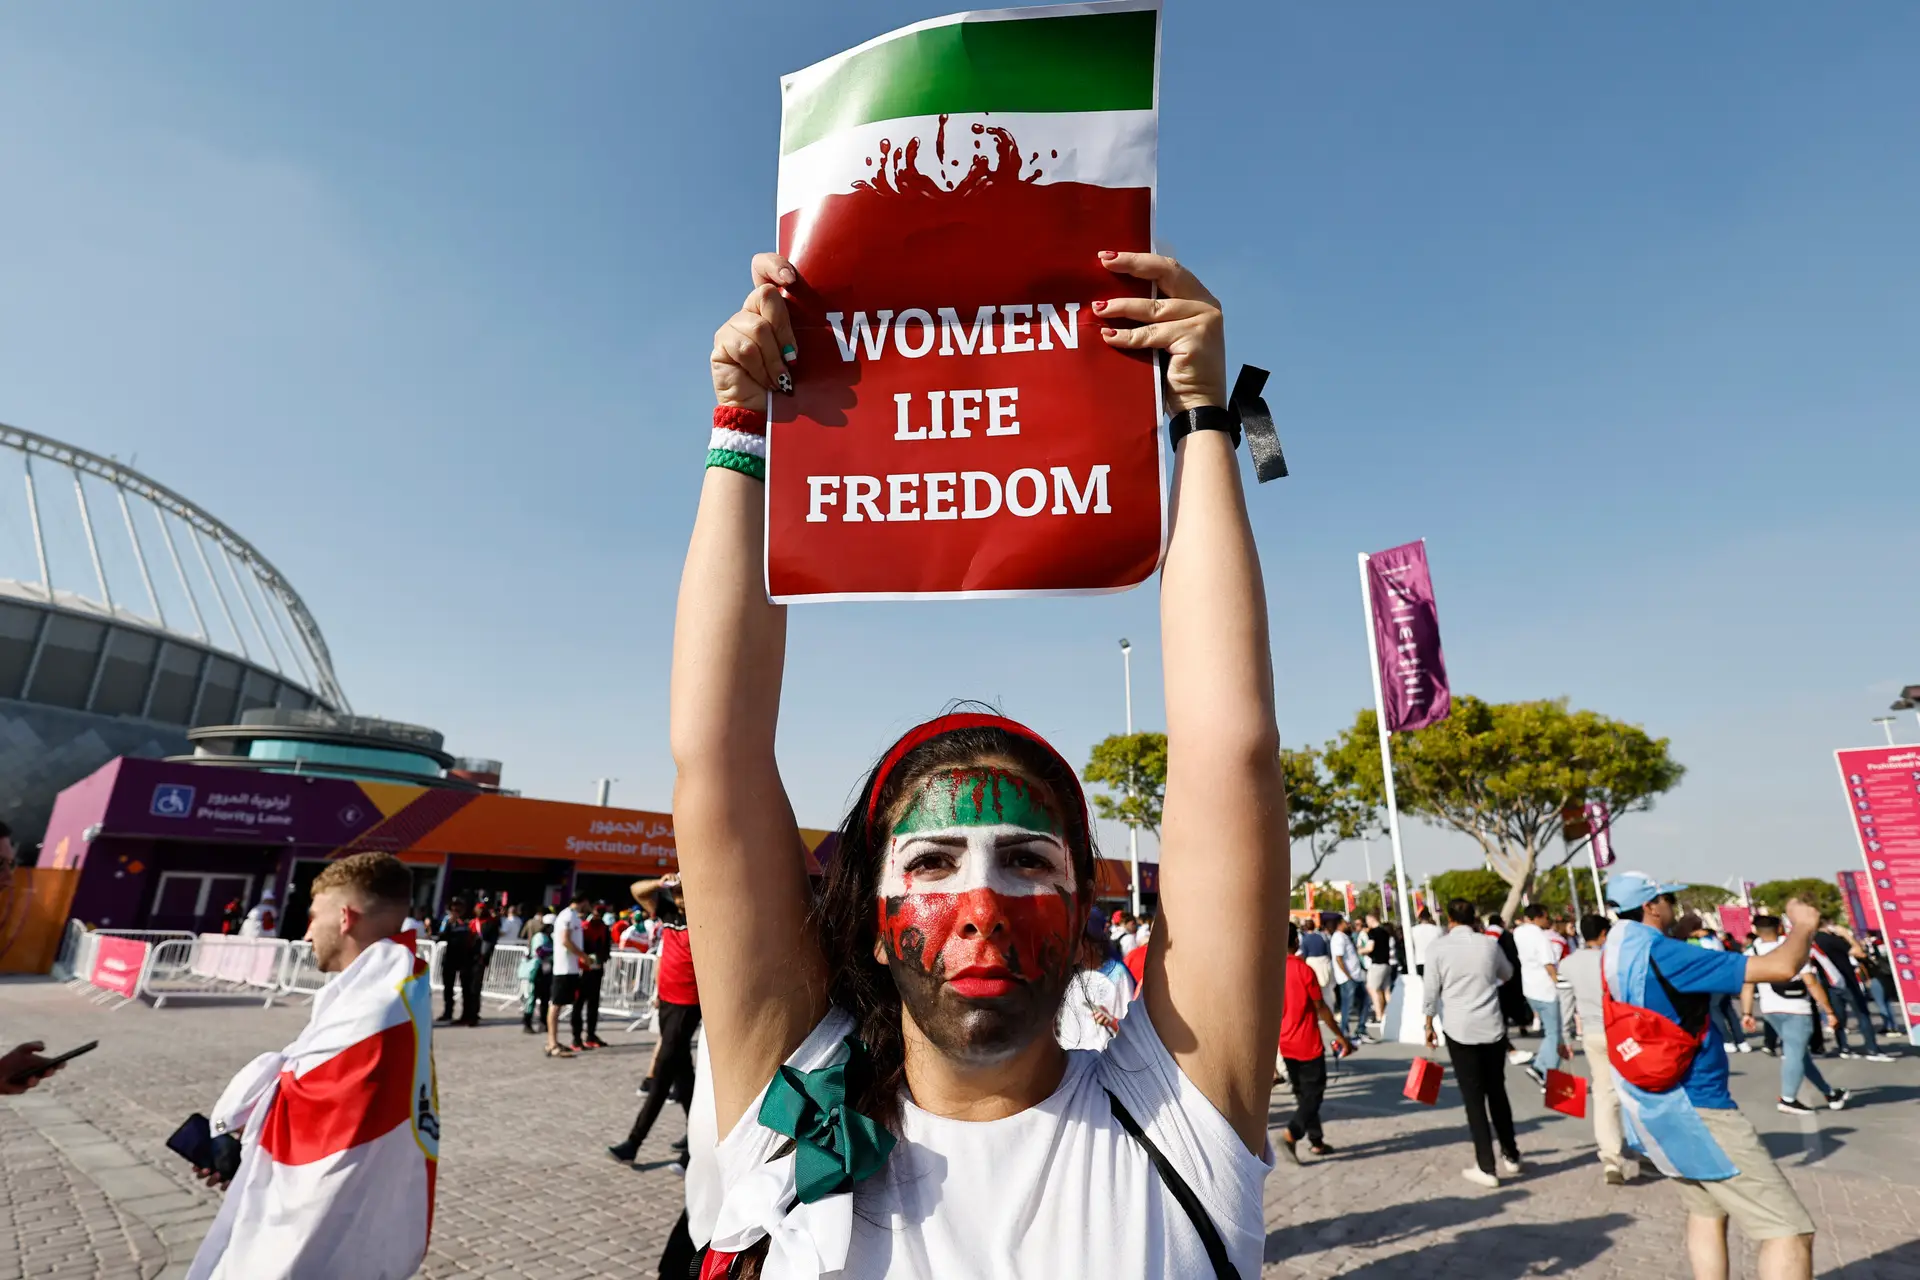 Protesto contra o regime iraniano antecede o jogo Inglaterra-Irão - SIC  Notícias